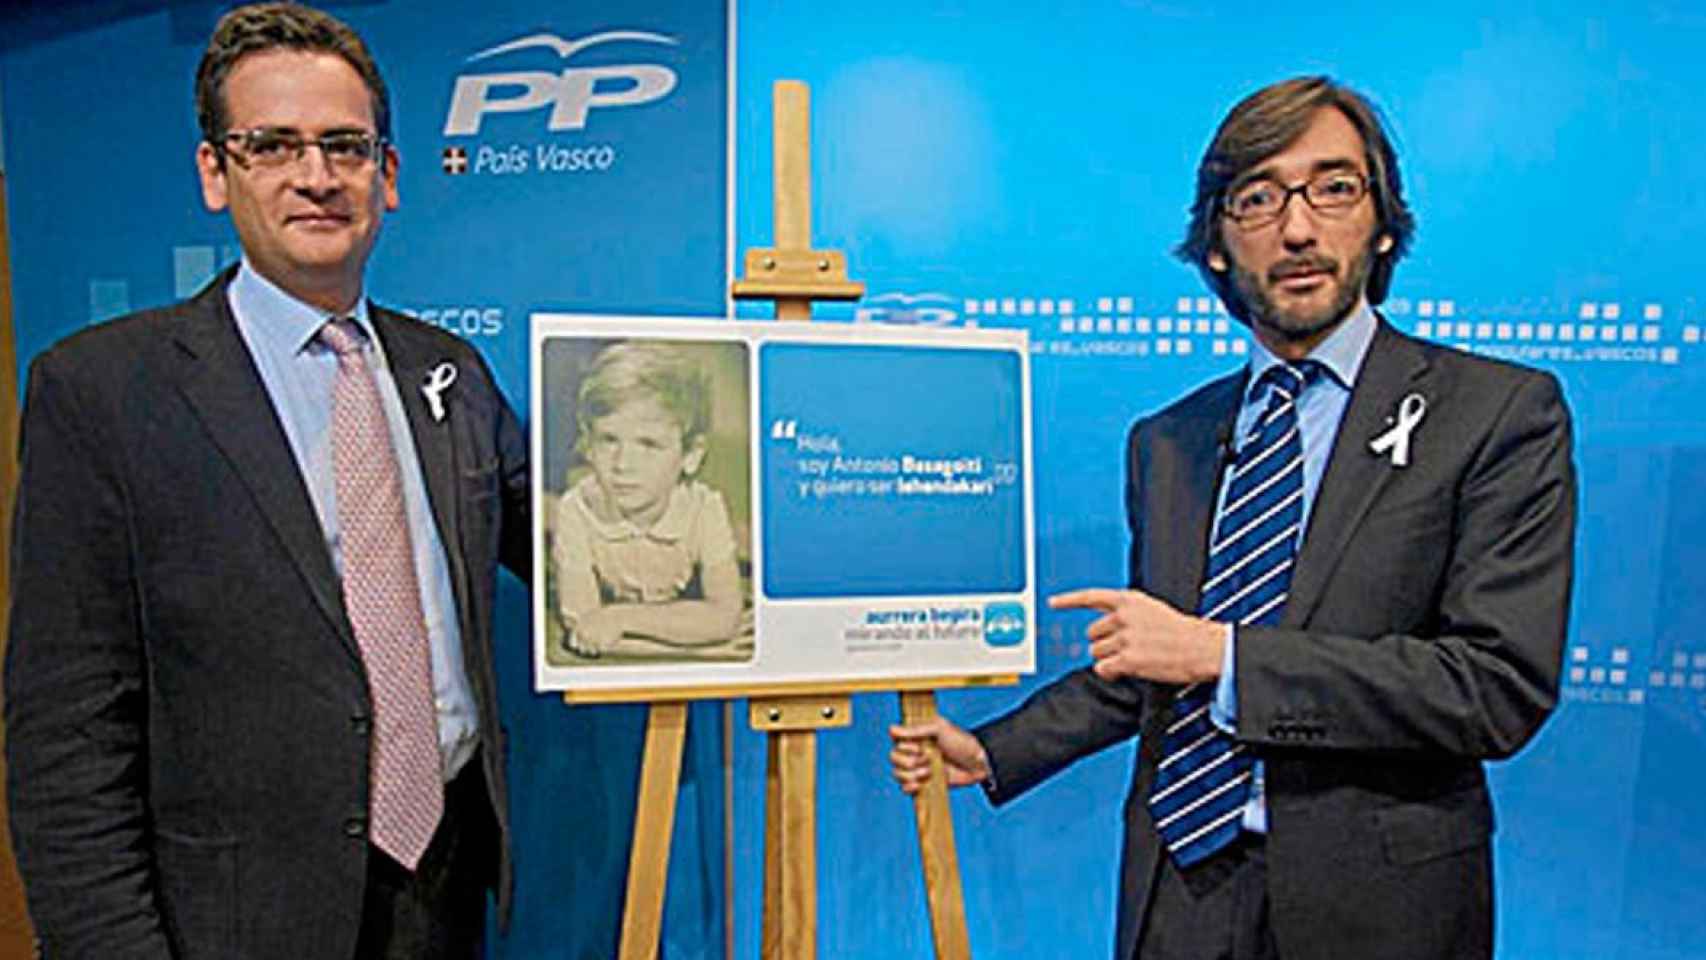 La campaña de Antonio Basagoiti (izquierda) con el PP vasco en 2009